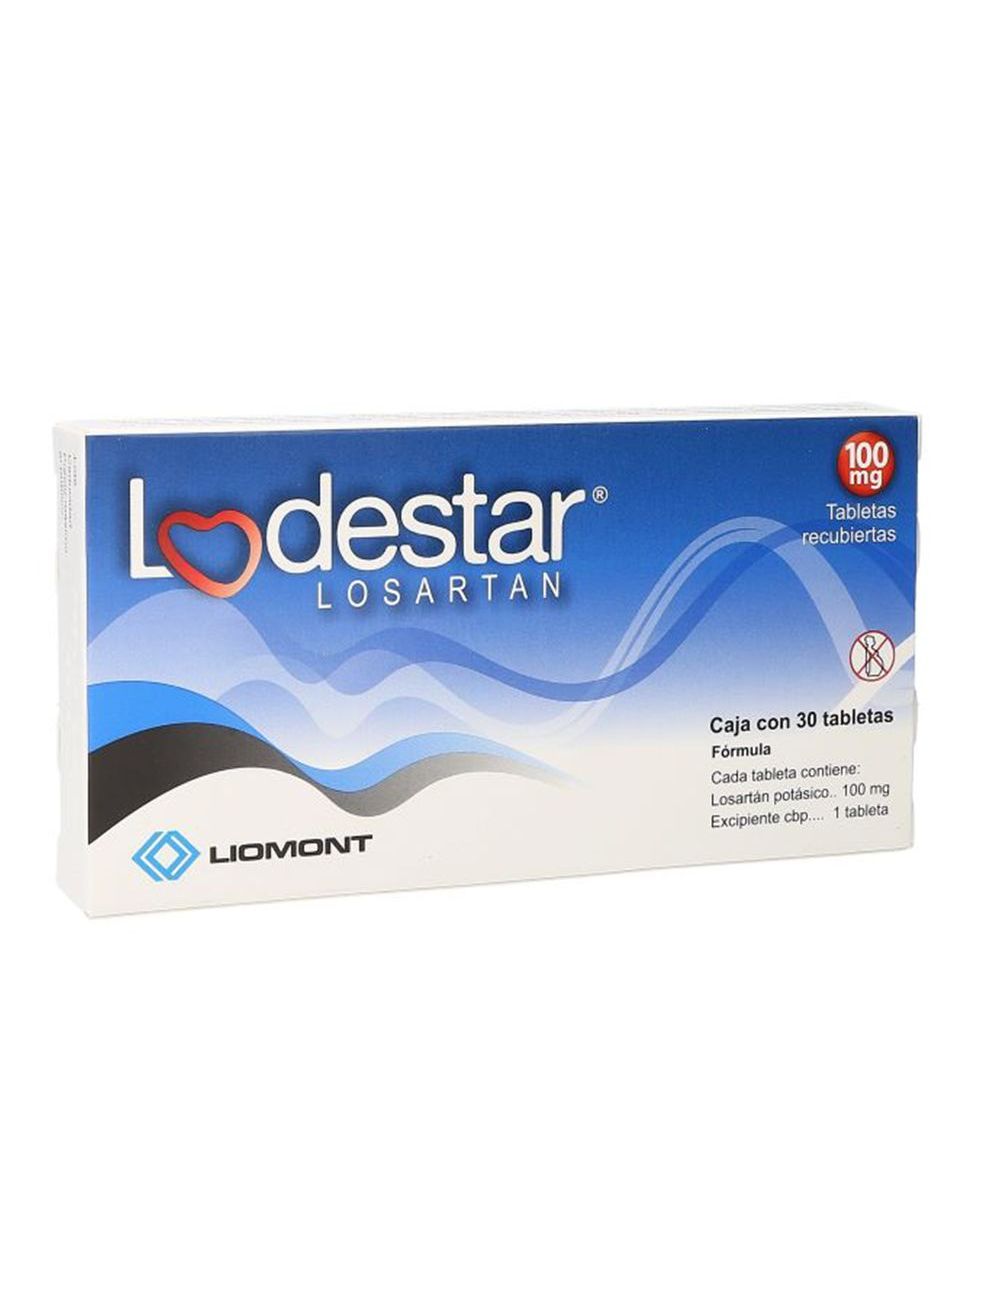 Lodestar 100 mg Caja Con 30 Tabletas